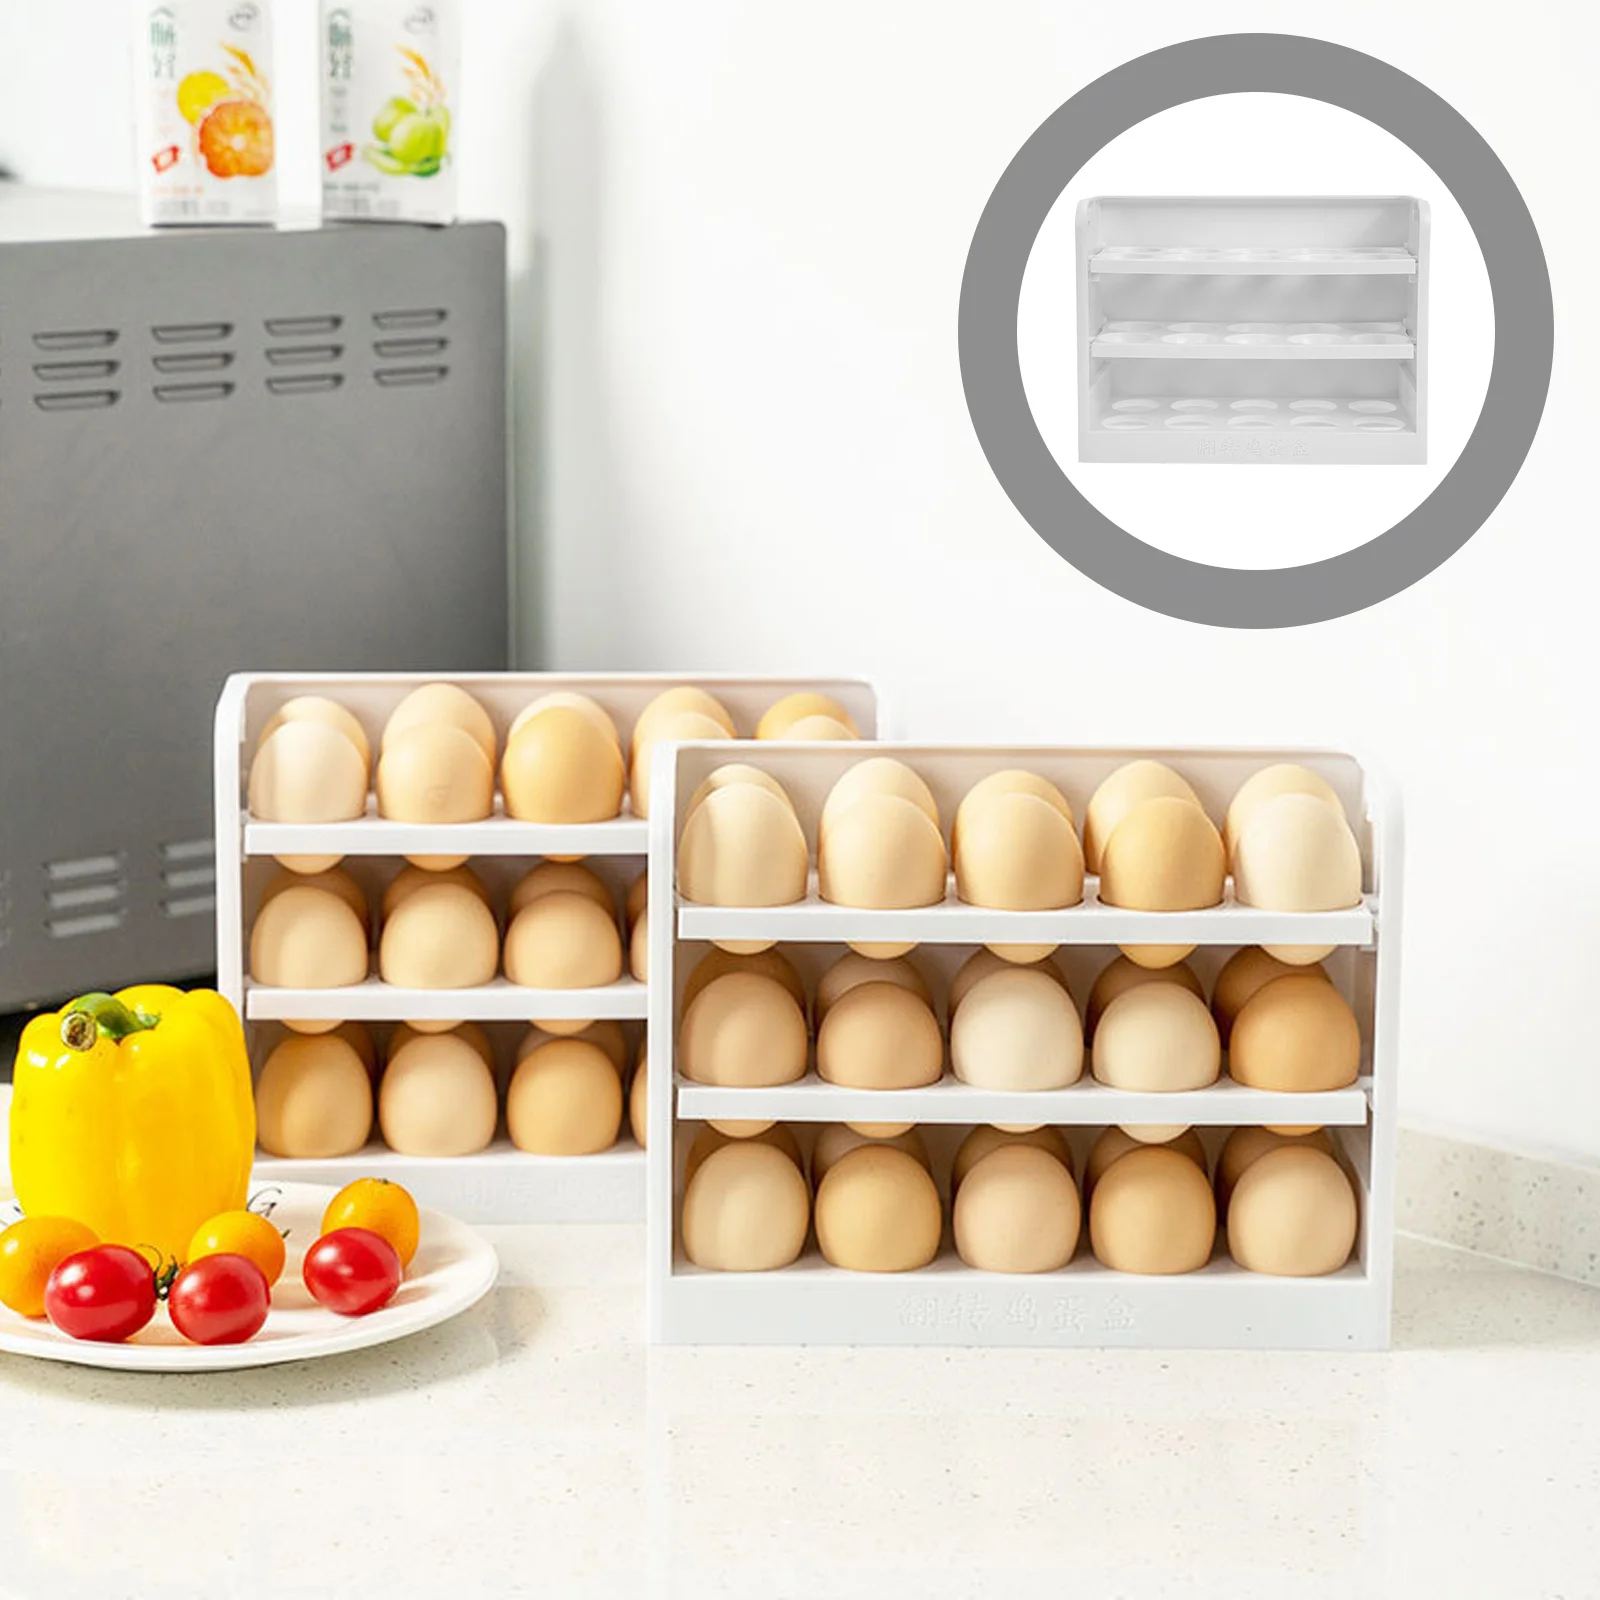 

Держатель для яиц, лоток для хранения в холодильнике, контейнер, ящик, диспенсер для холодильника, корзина для яиц, органайзер для демонстра...